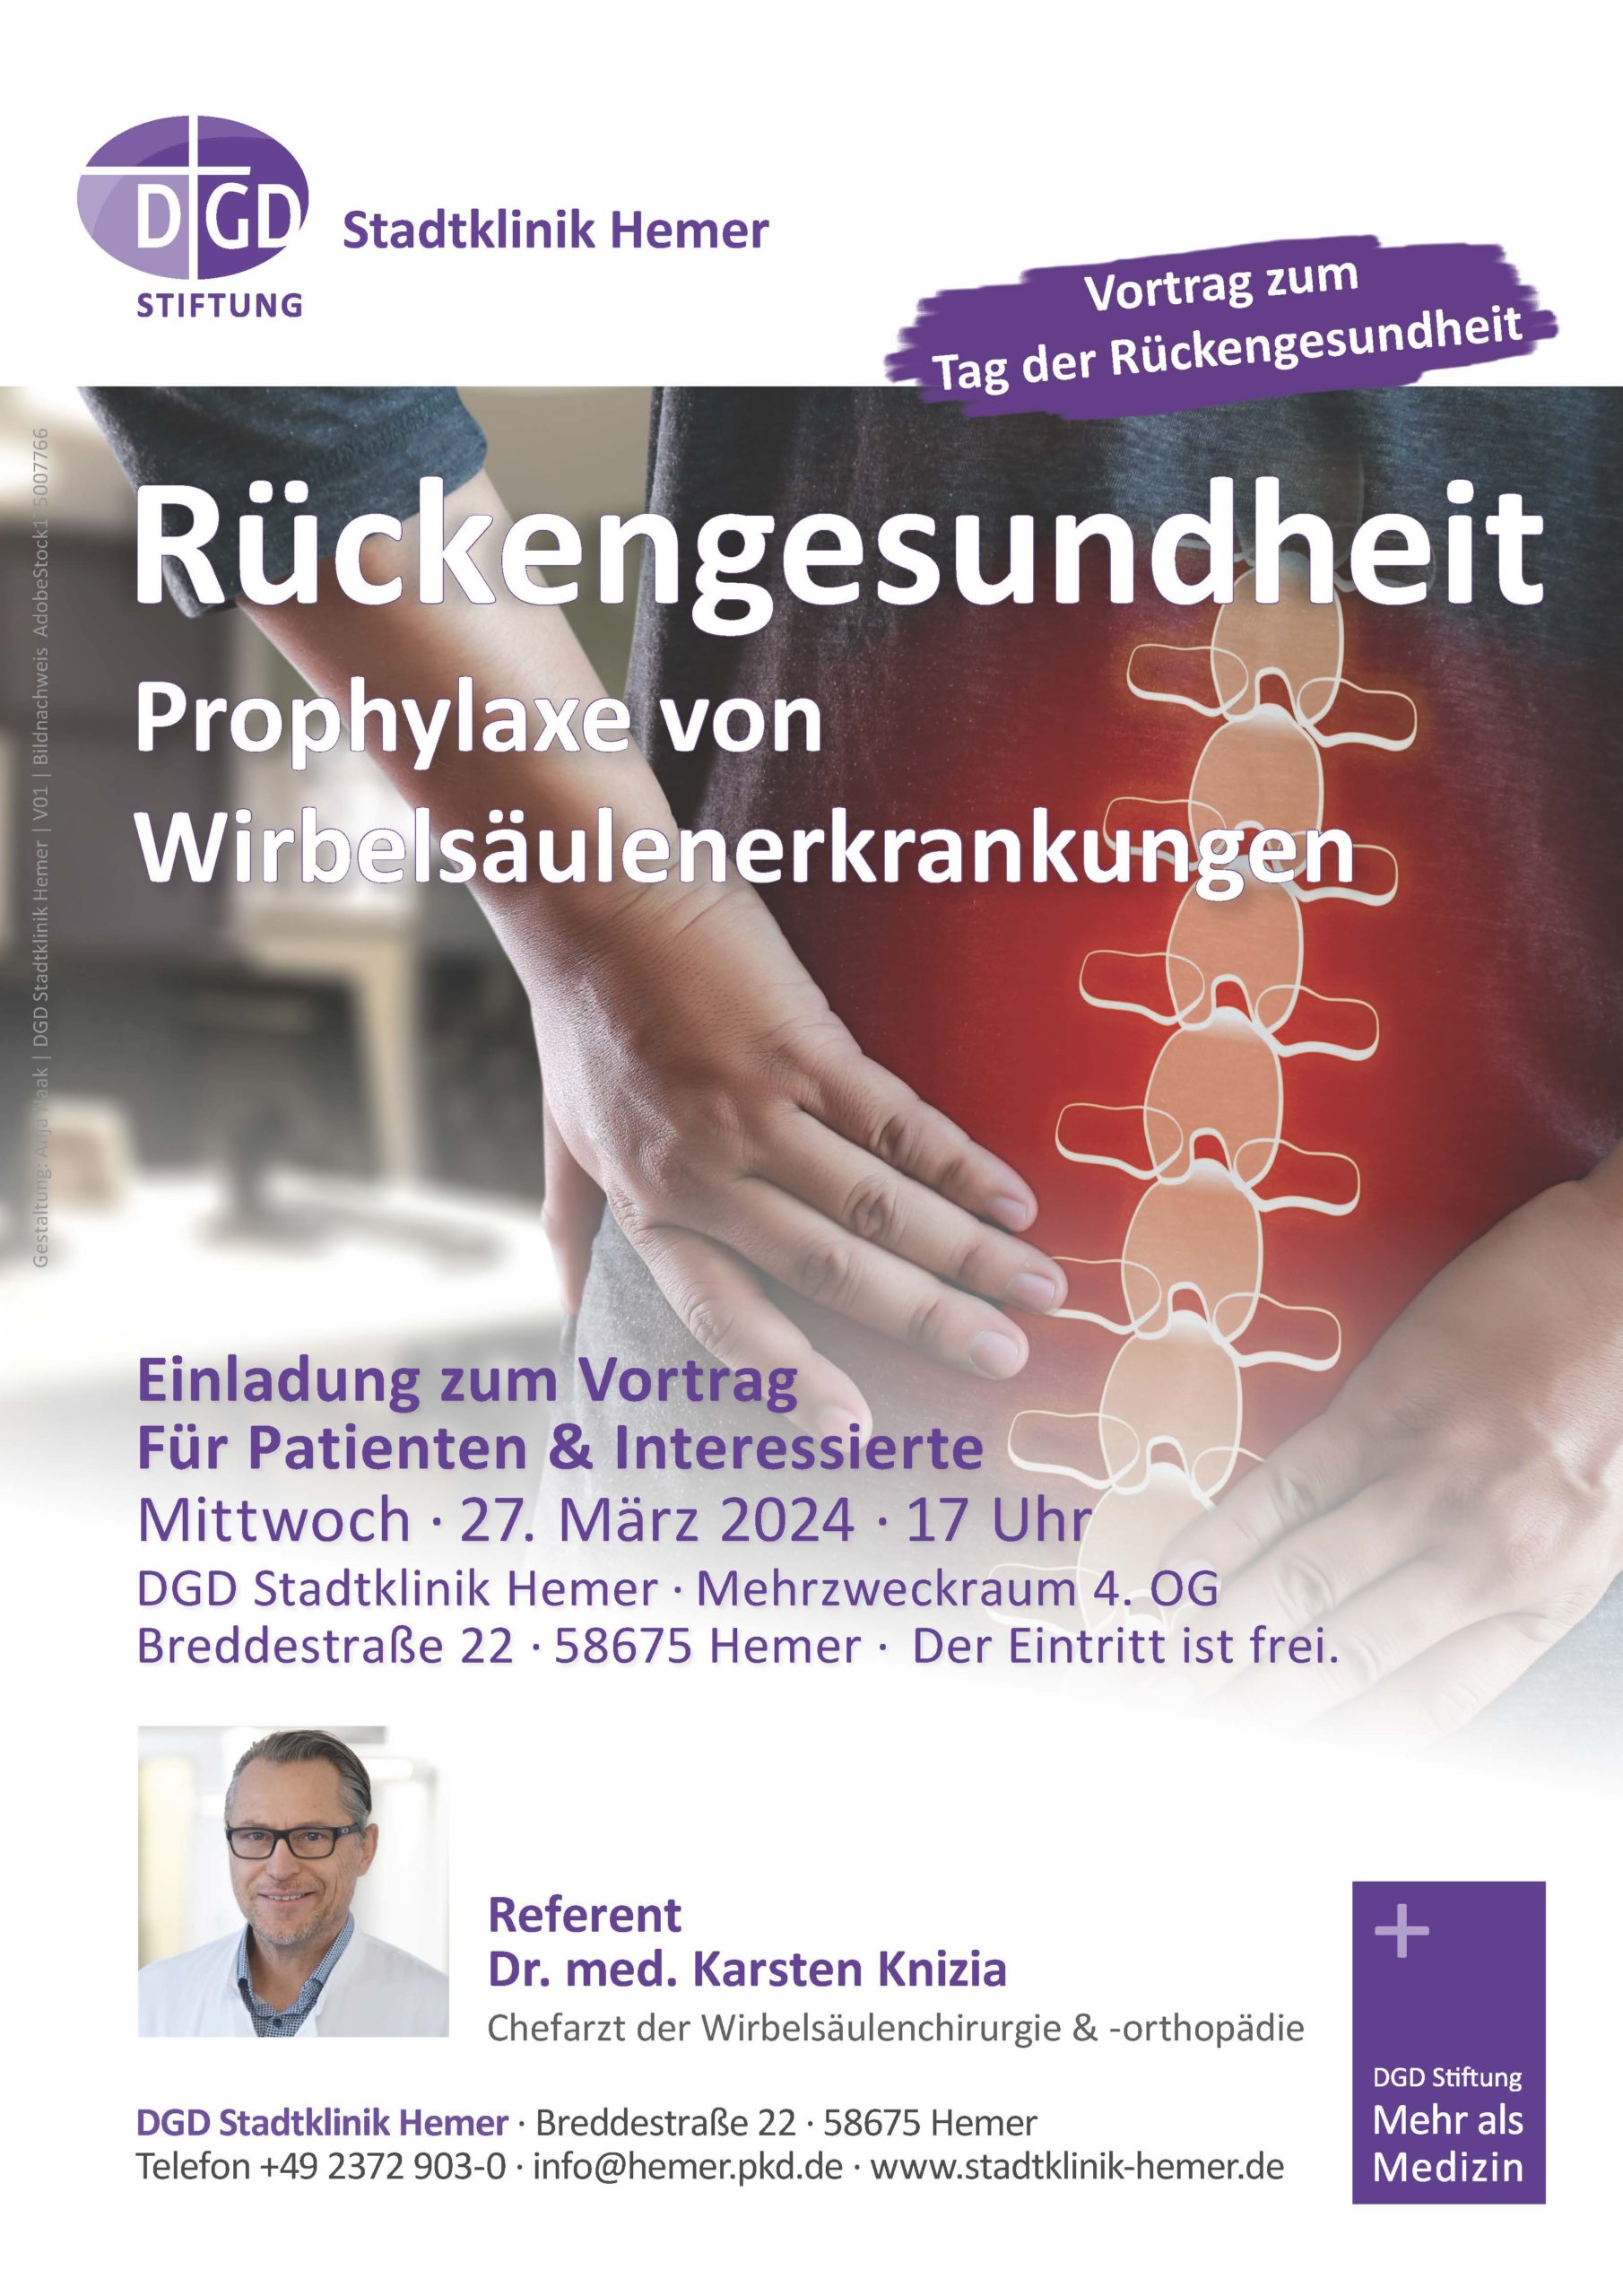 SAVE THE DATE: Vortragsveranstaltung für Patienten und Interessierte: Rückengesundheit & Prophylaxe von Wirbelsäulenerkrankungen